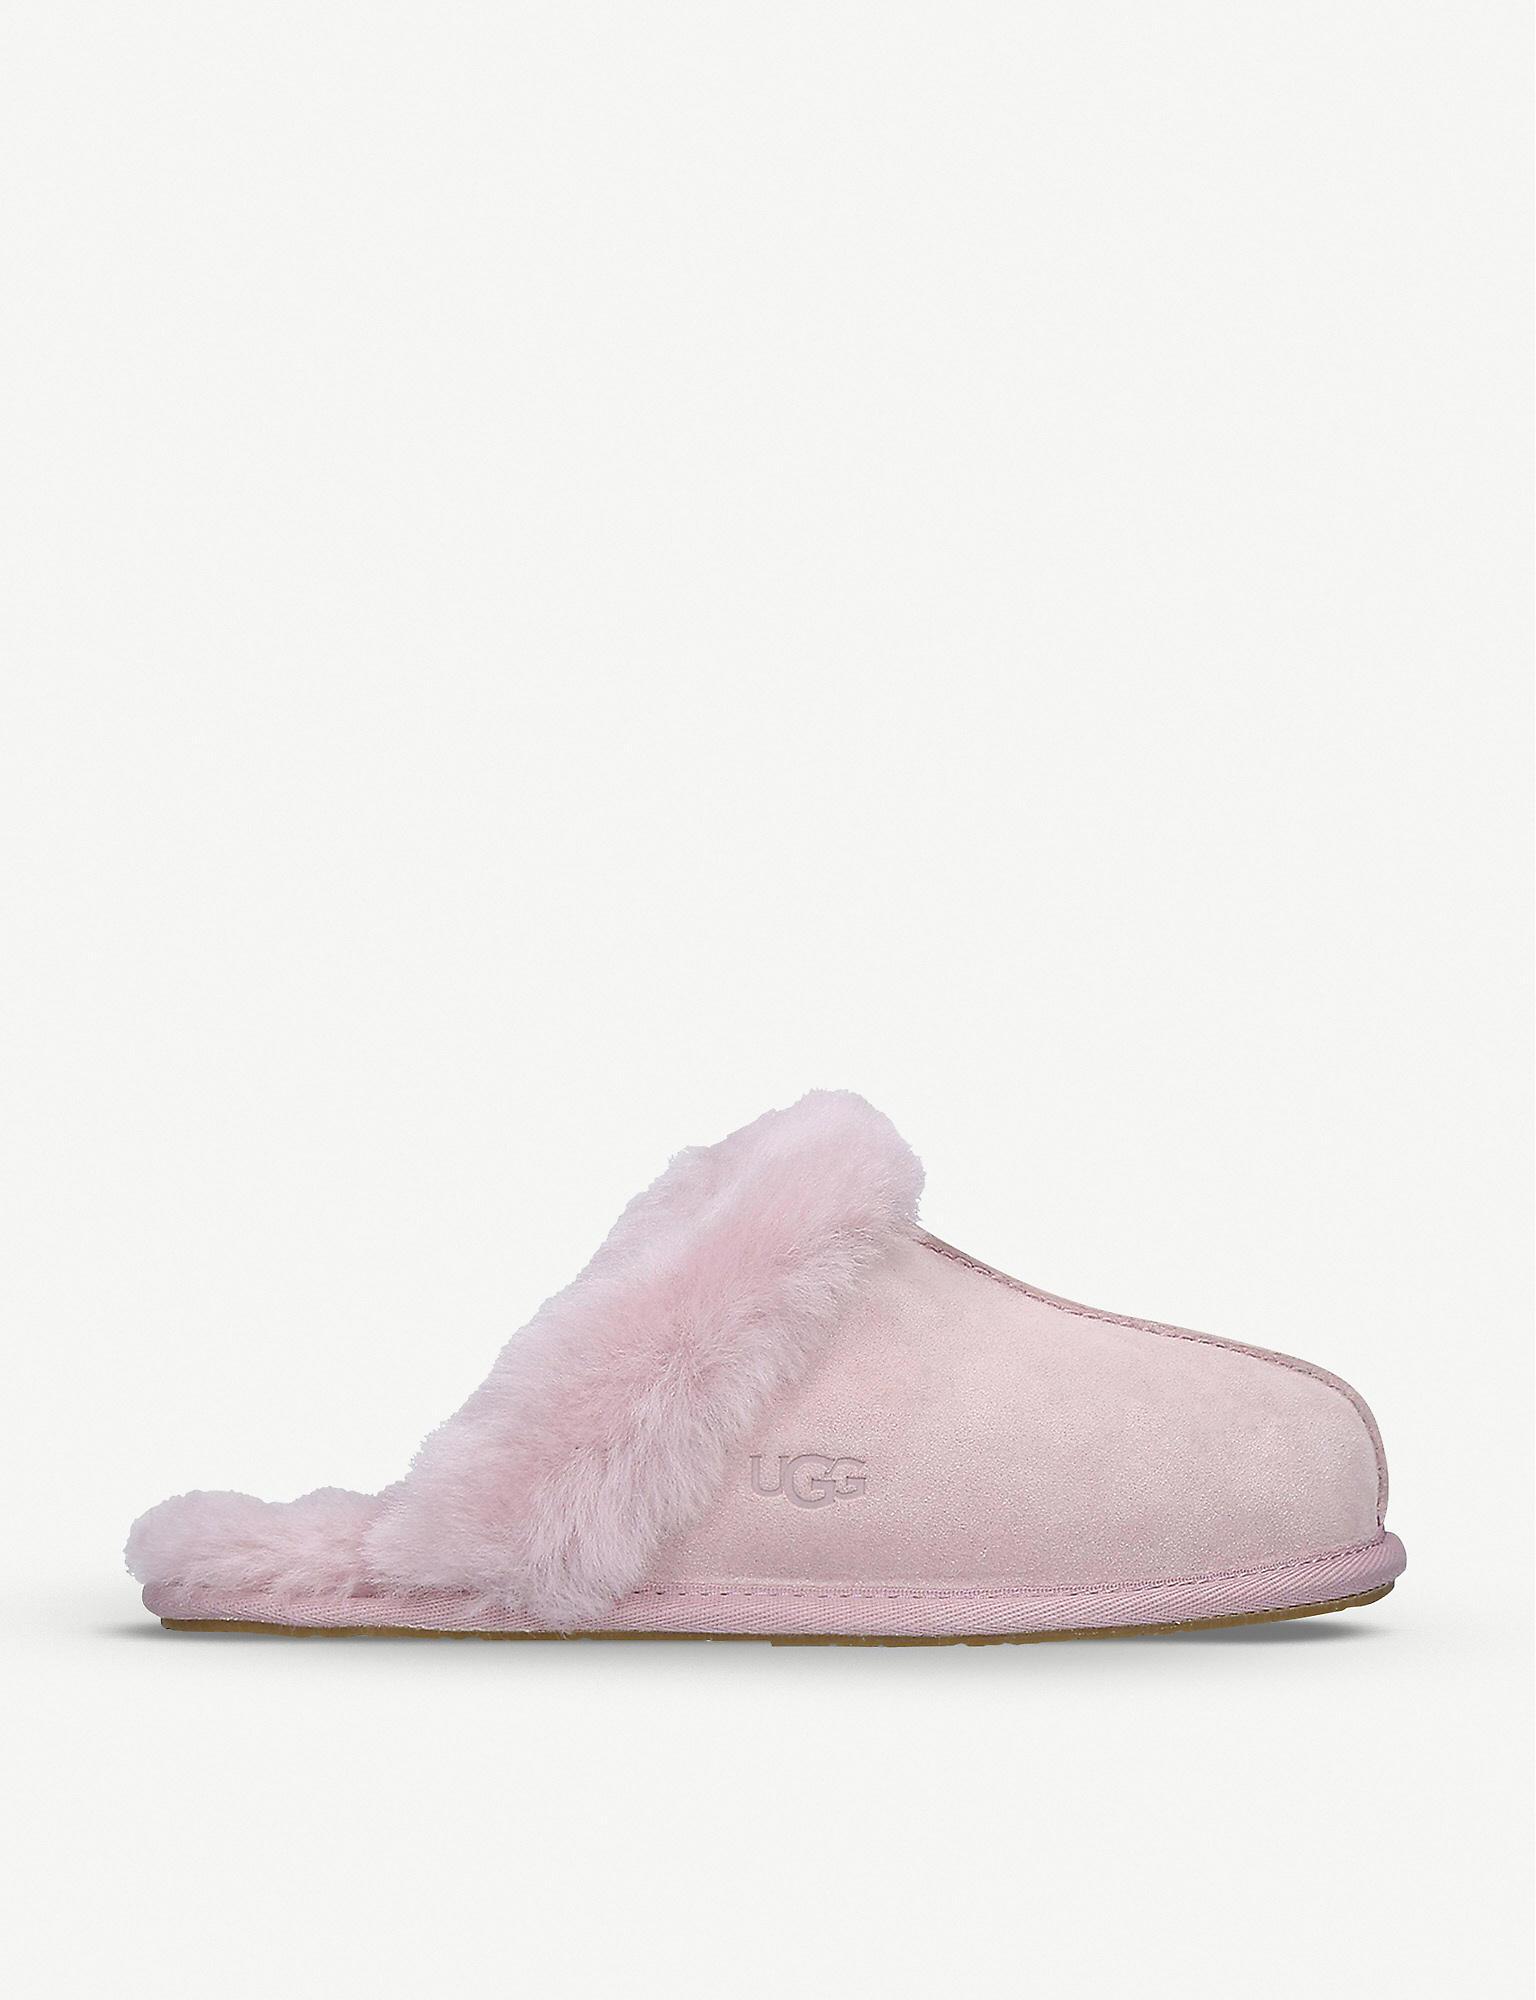 UGG Scuffette Ii Sheepskin Slippers in Pink | Lyst